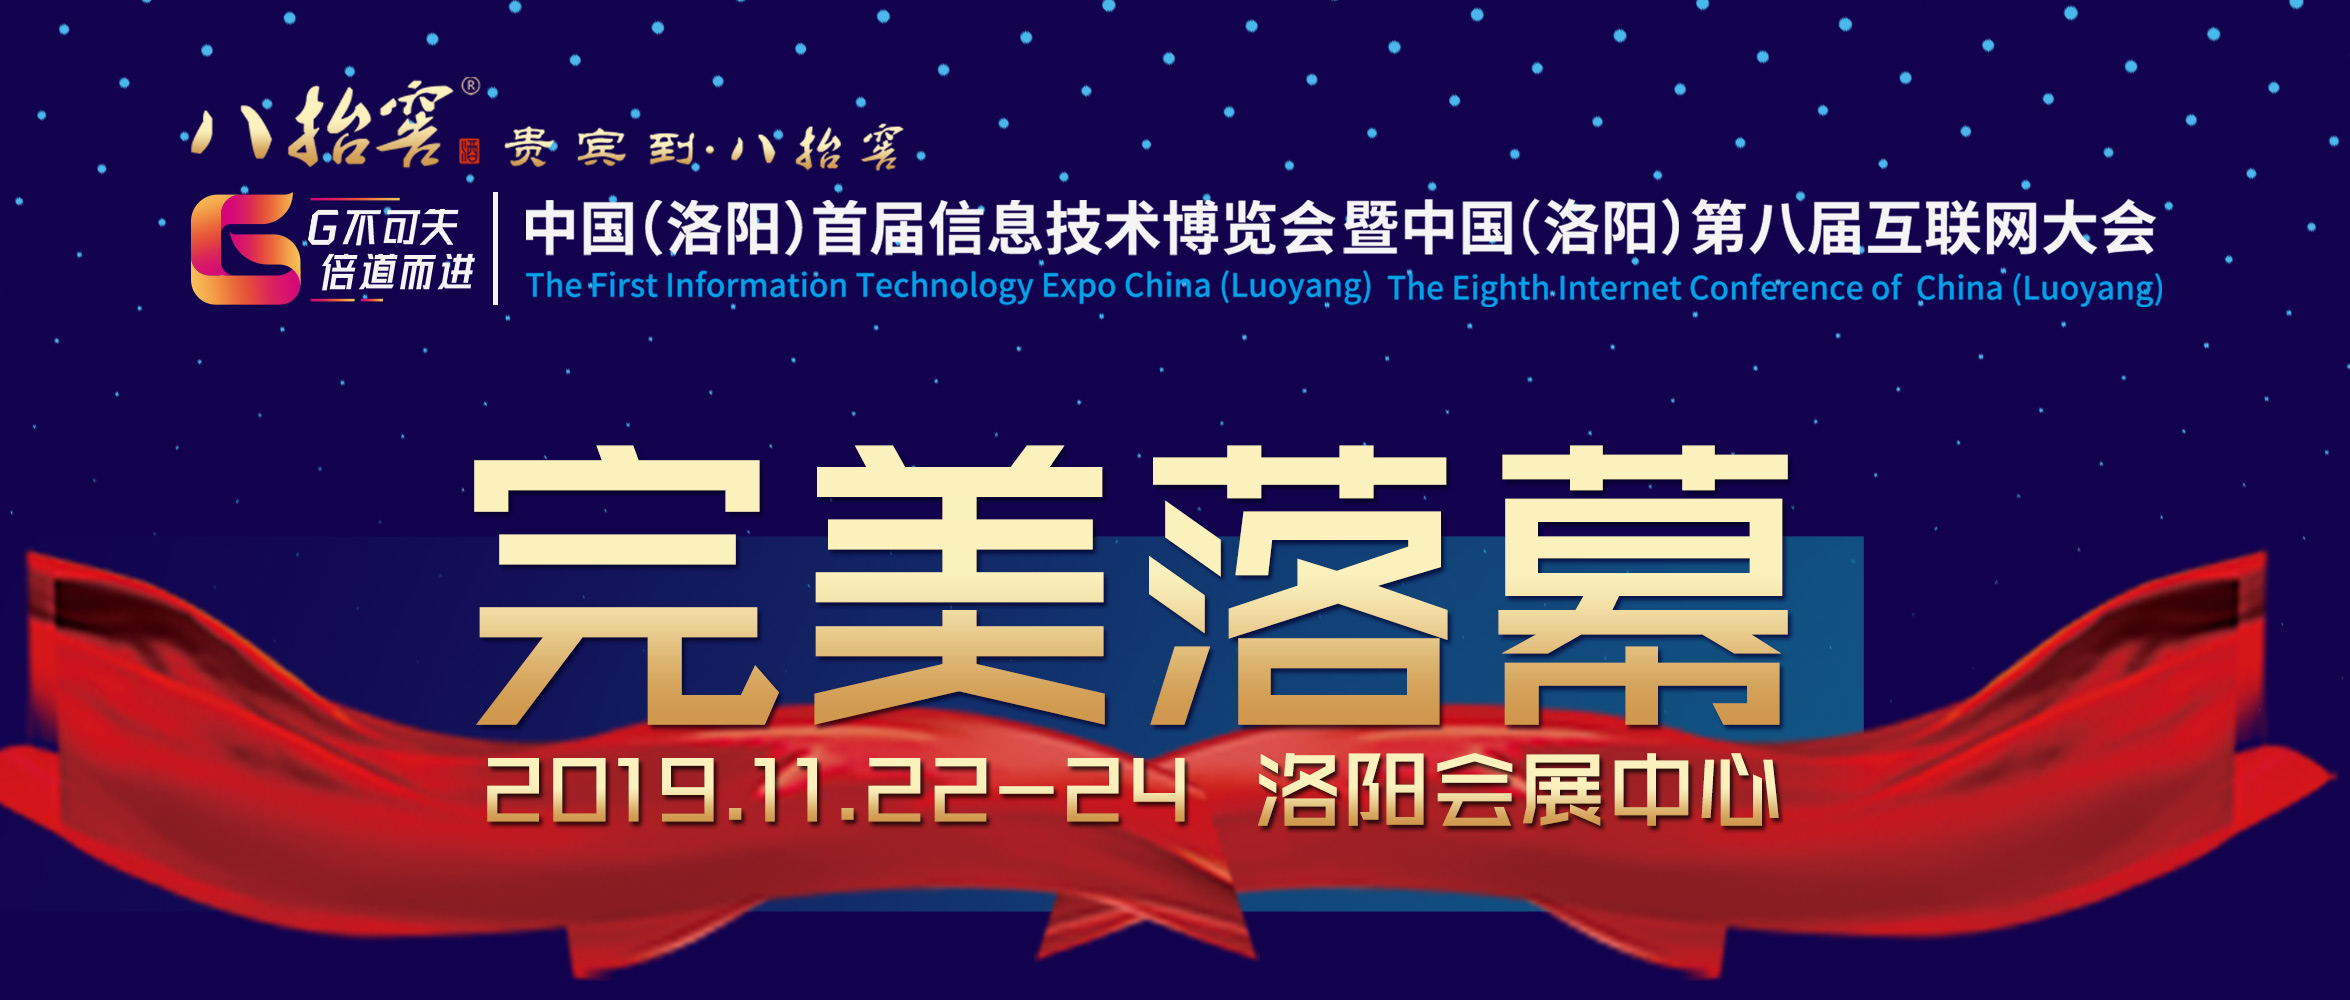 中国（洛阳）首届信息技术博览会暨中国（洛阳）第八届互联网大会完美落幕！